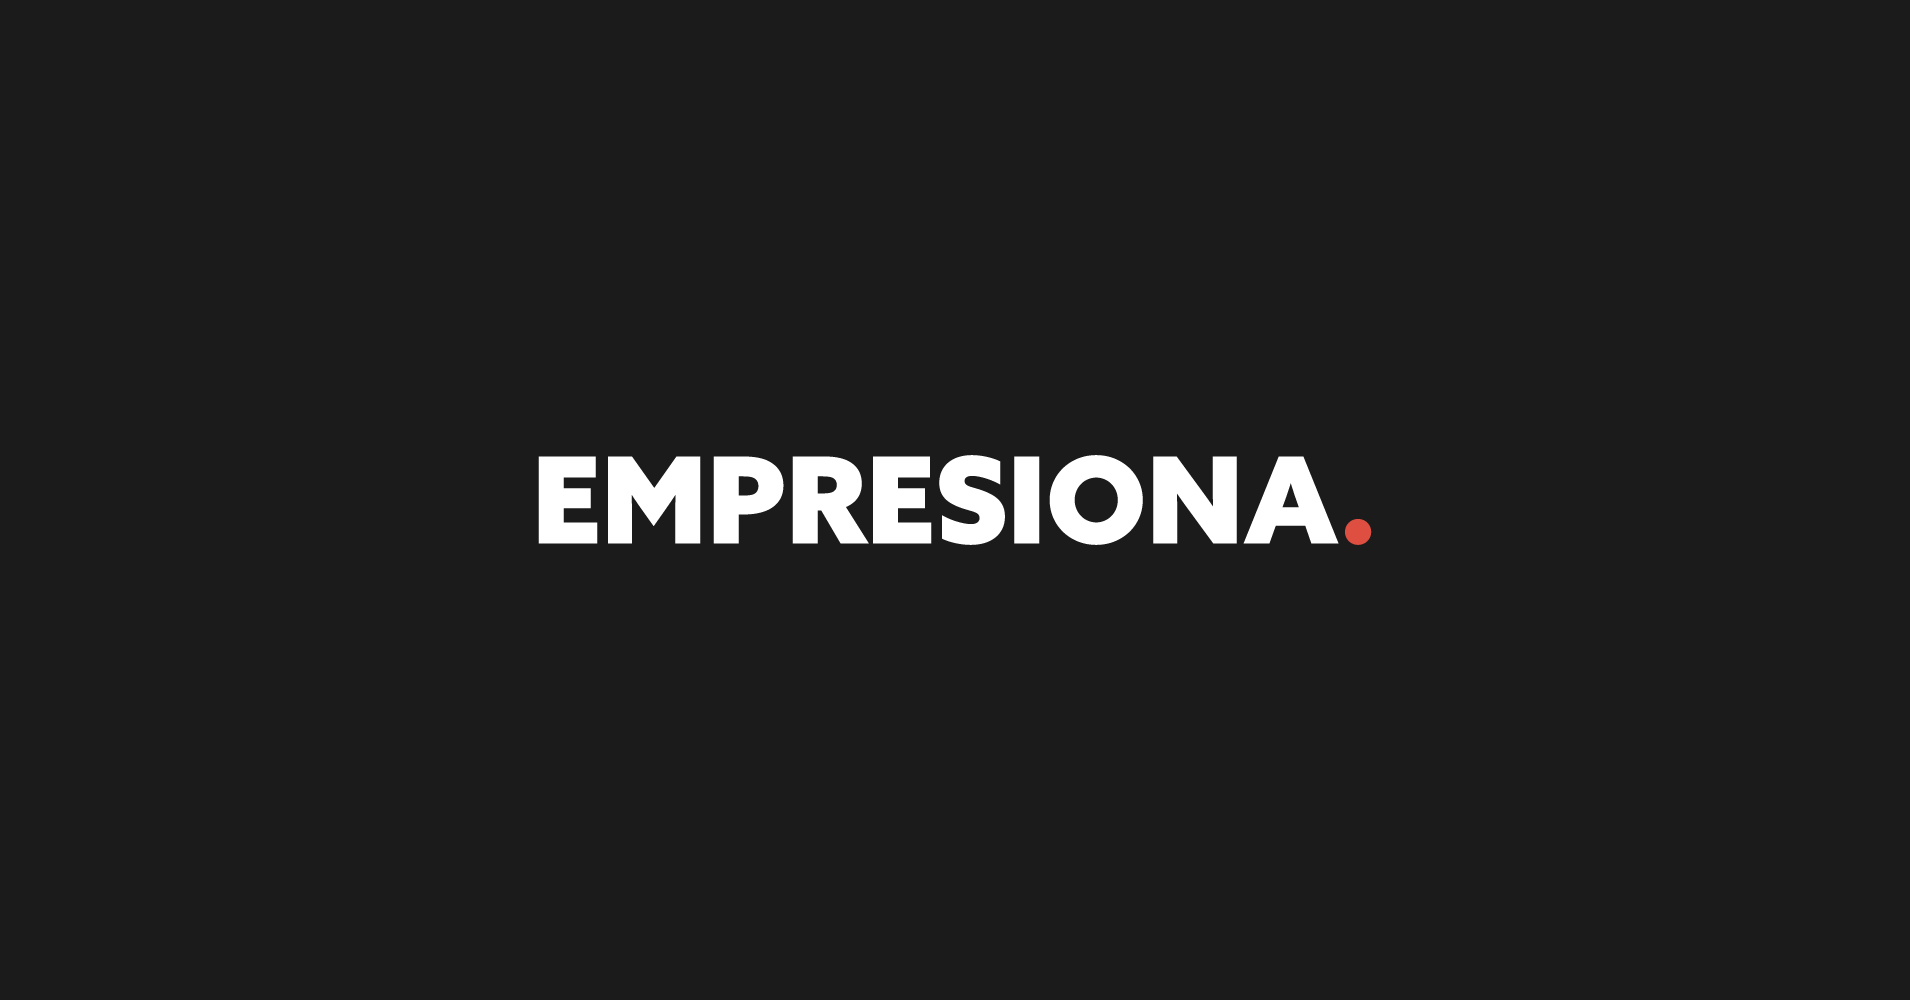 (c) Empresiona.com